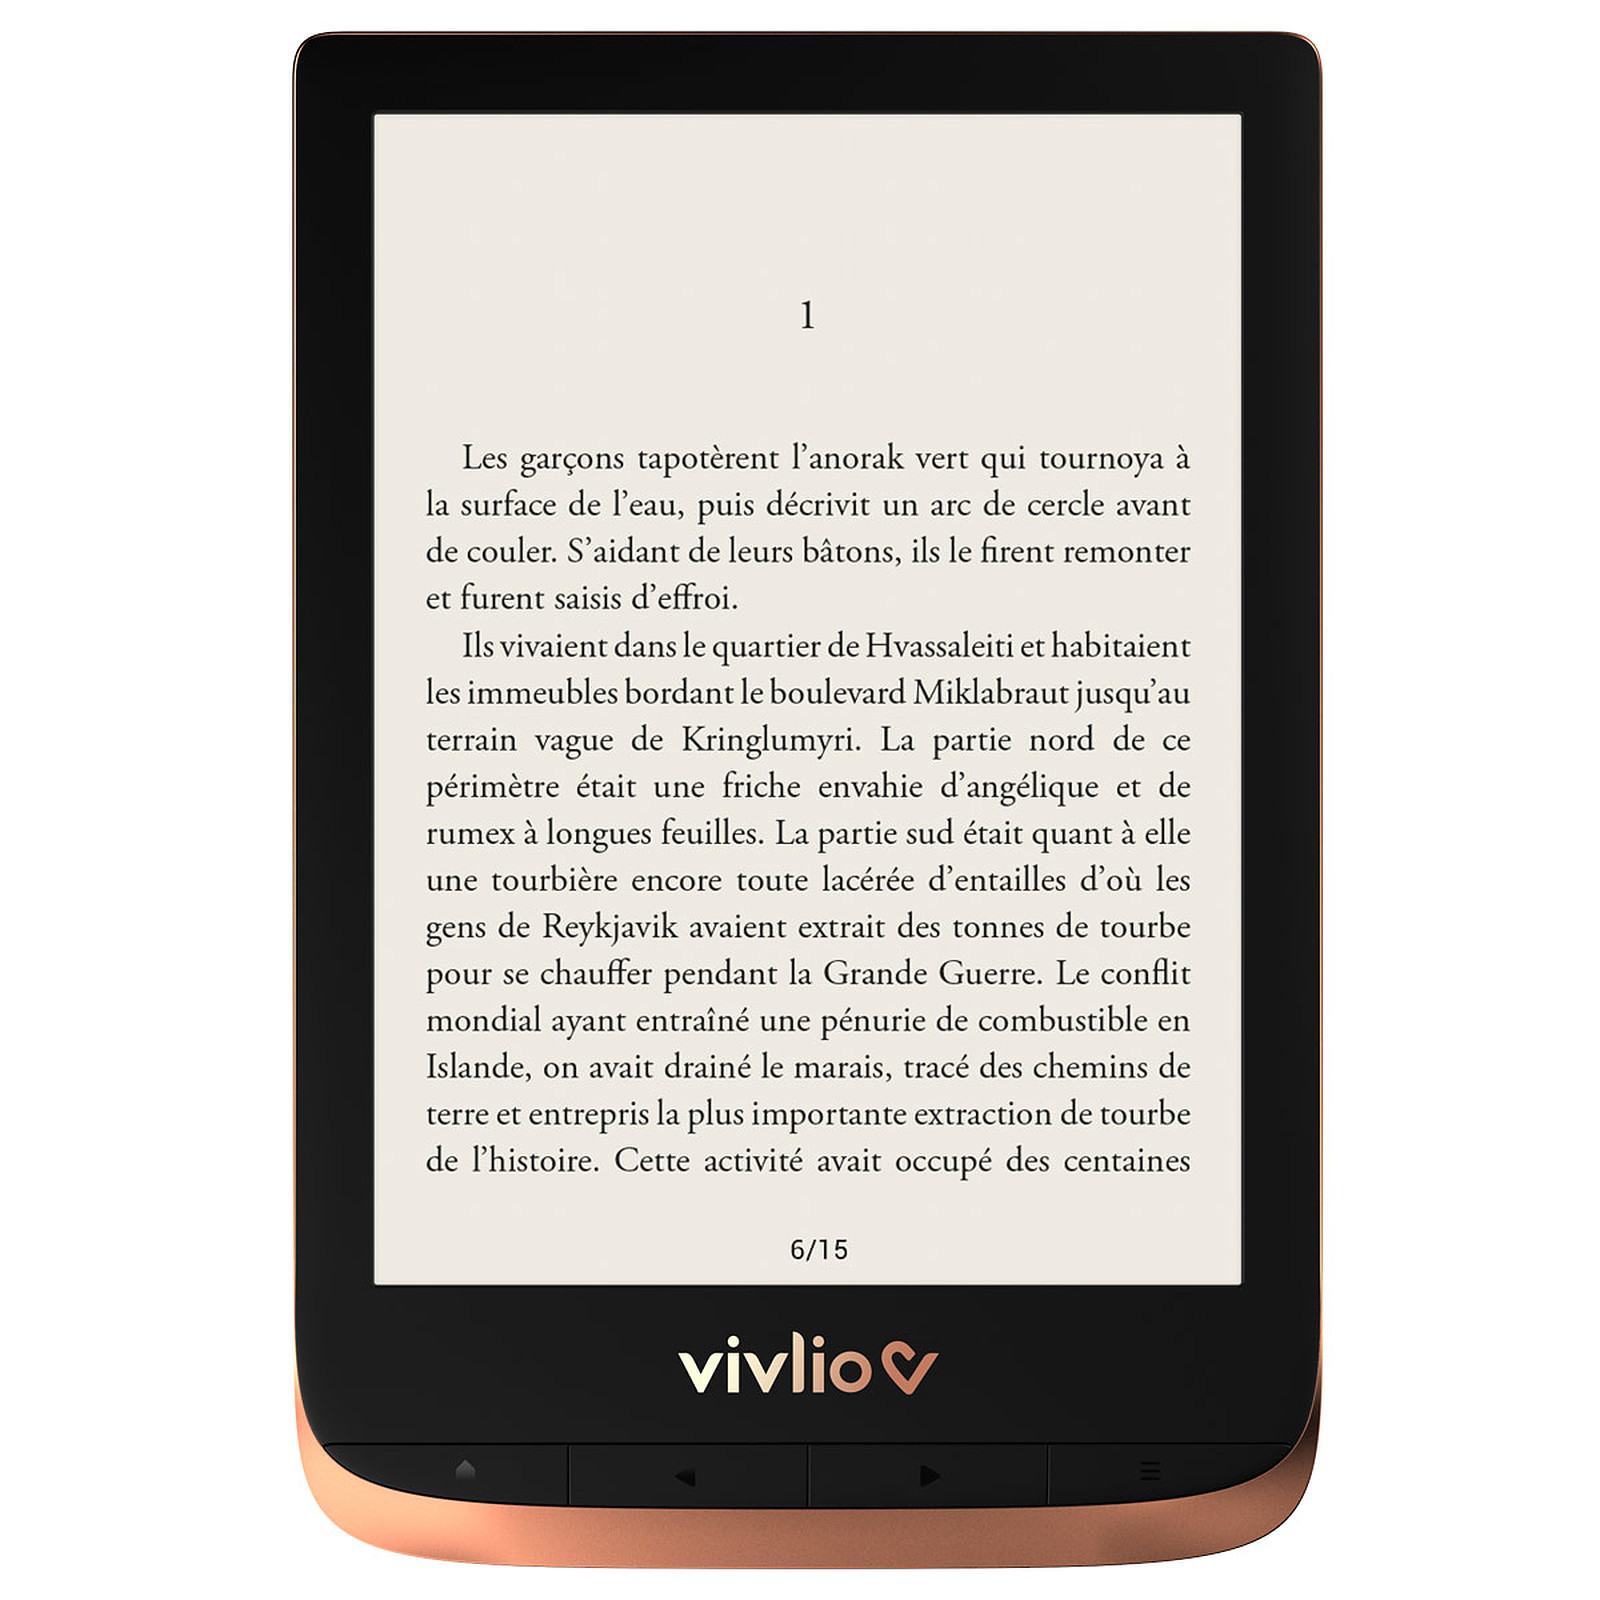 Vivlio Touch HD Plus Cuivre/Noir + Pack d'eBooks OFFERT - Liseuse eBook Vivlio